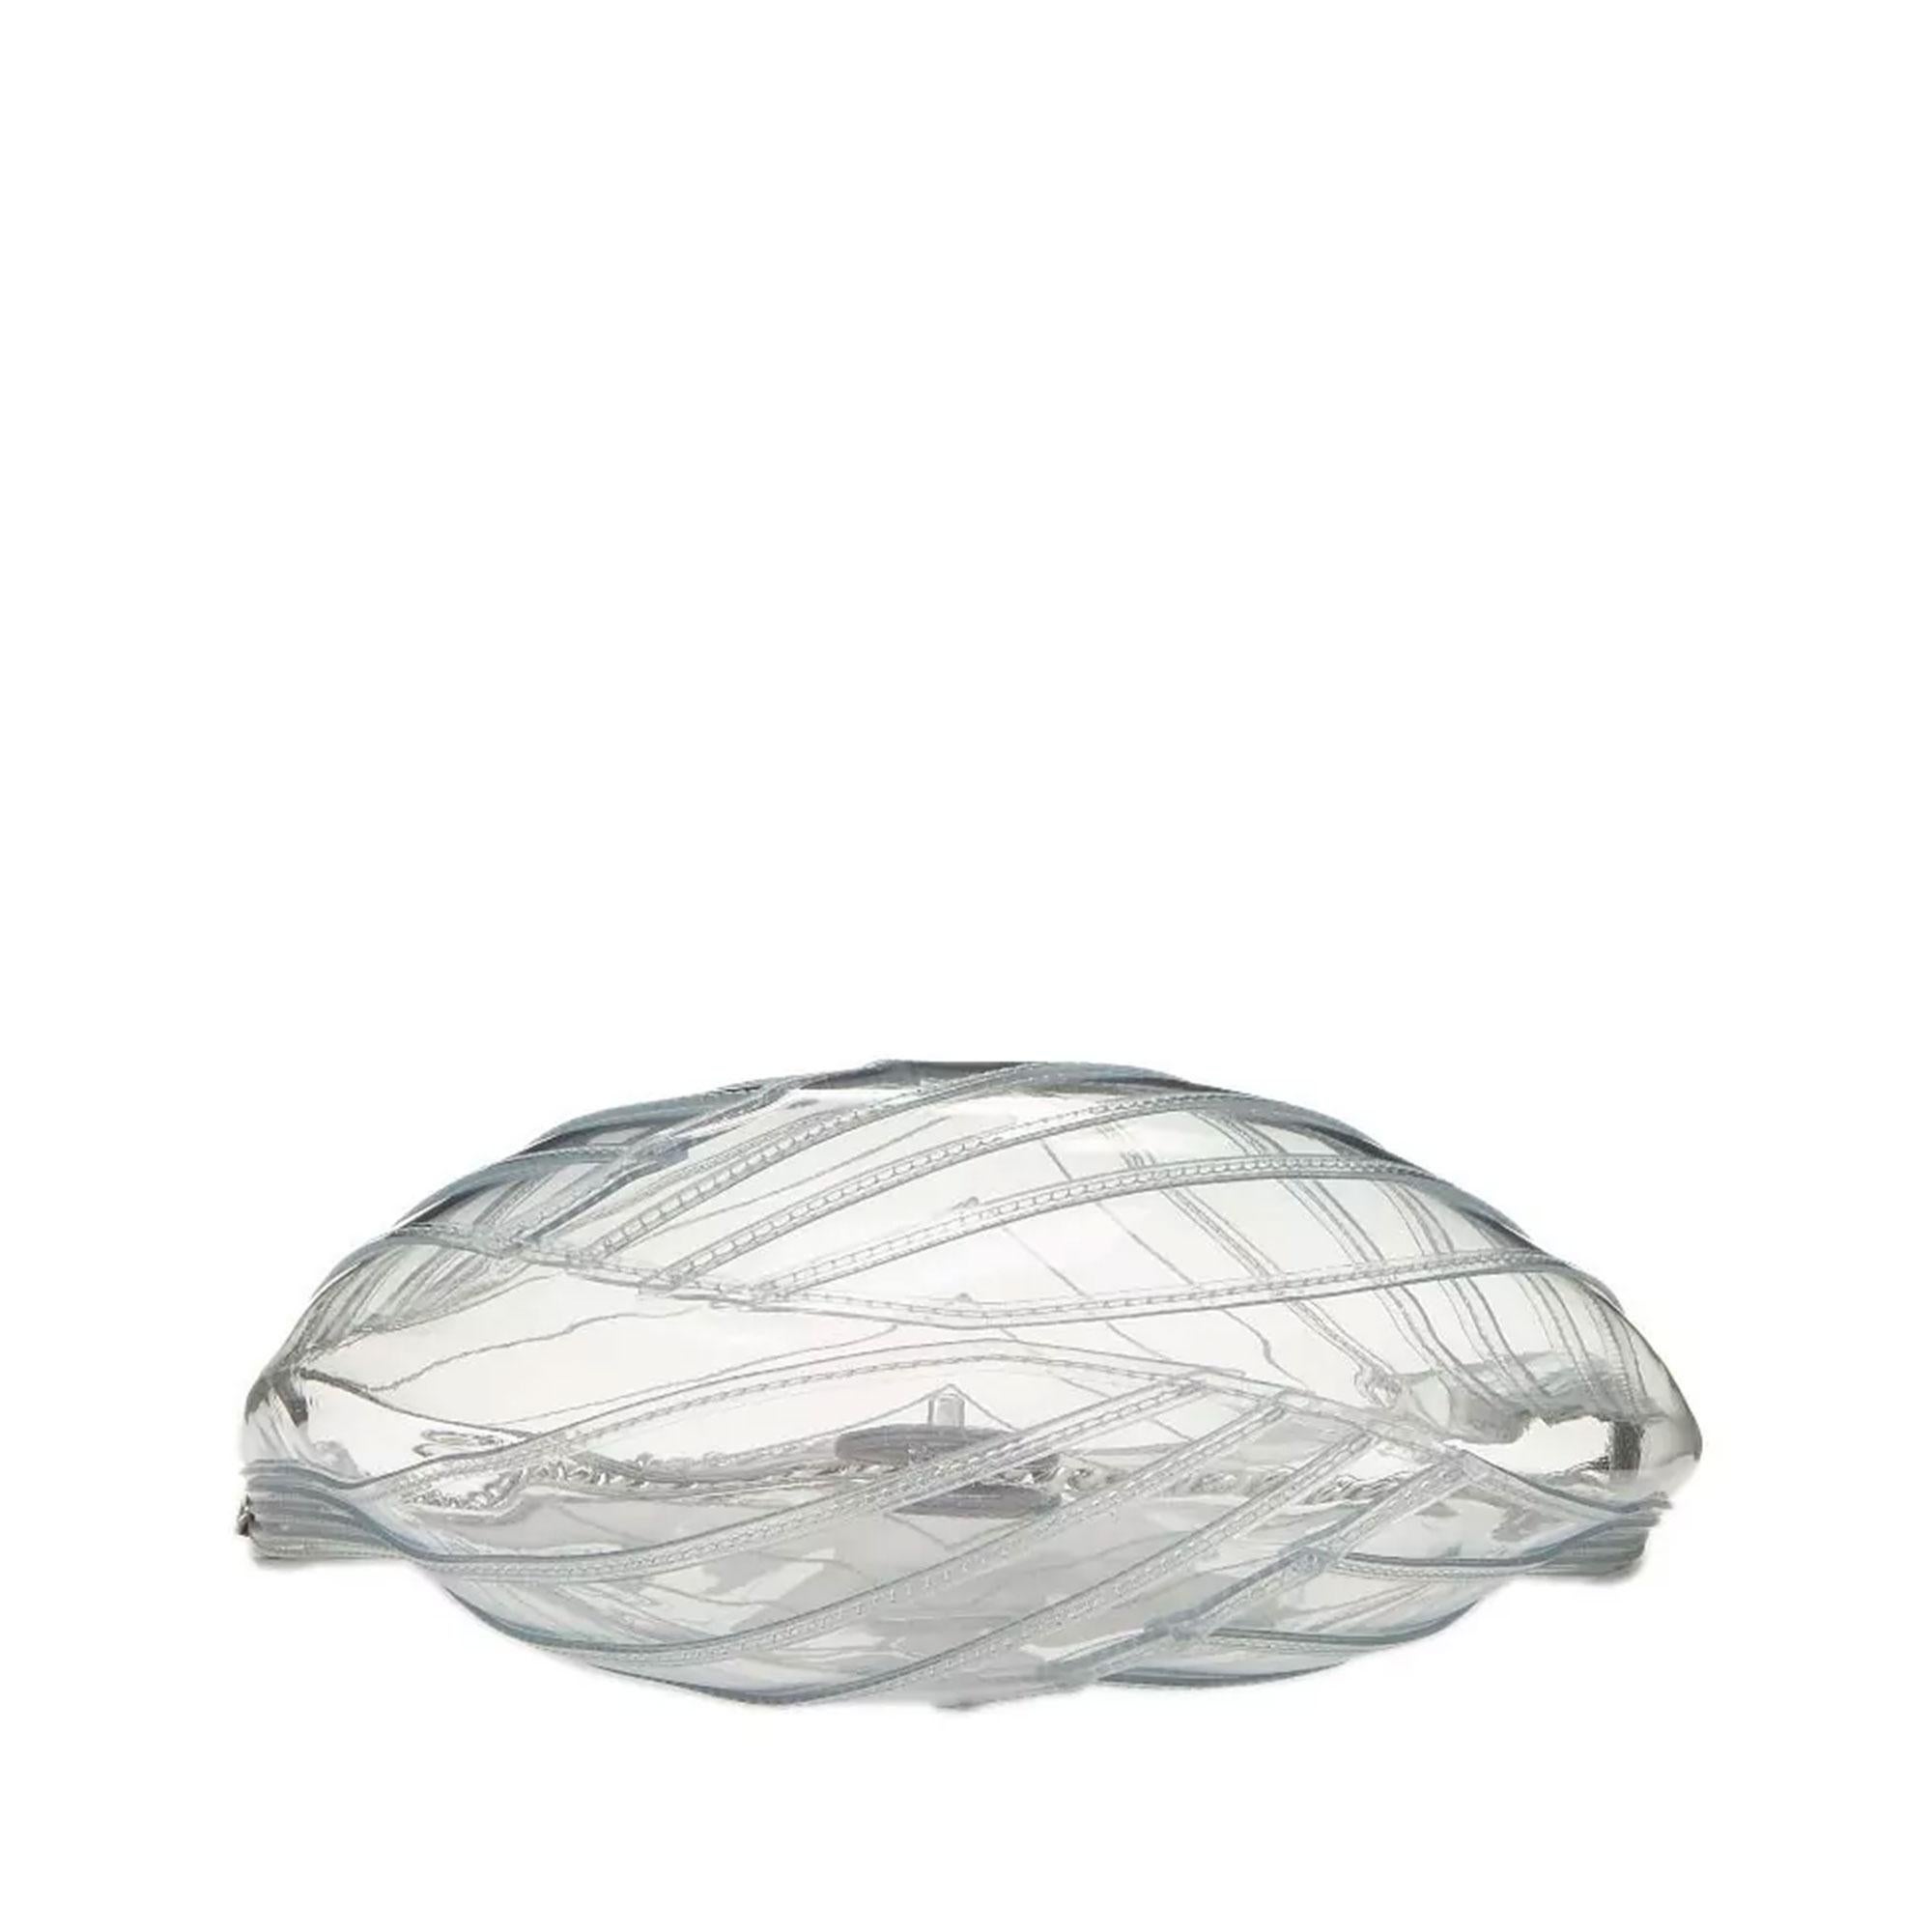 Chanel Hobo Handbag Transparent Teardrop Spring 2018 Clear Pvc Satchel For Sale 1